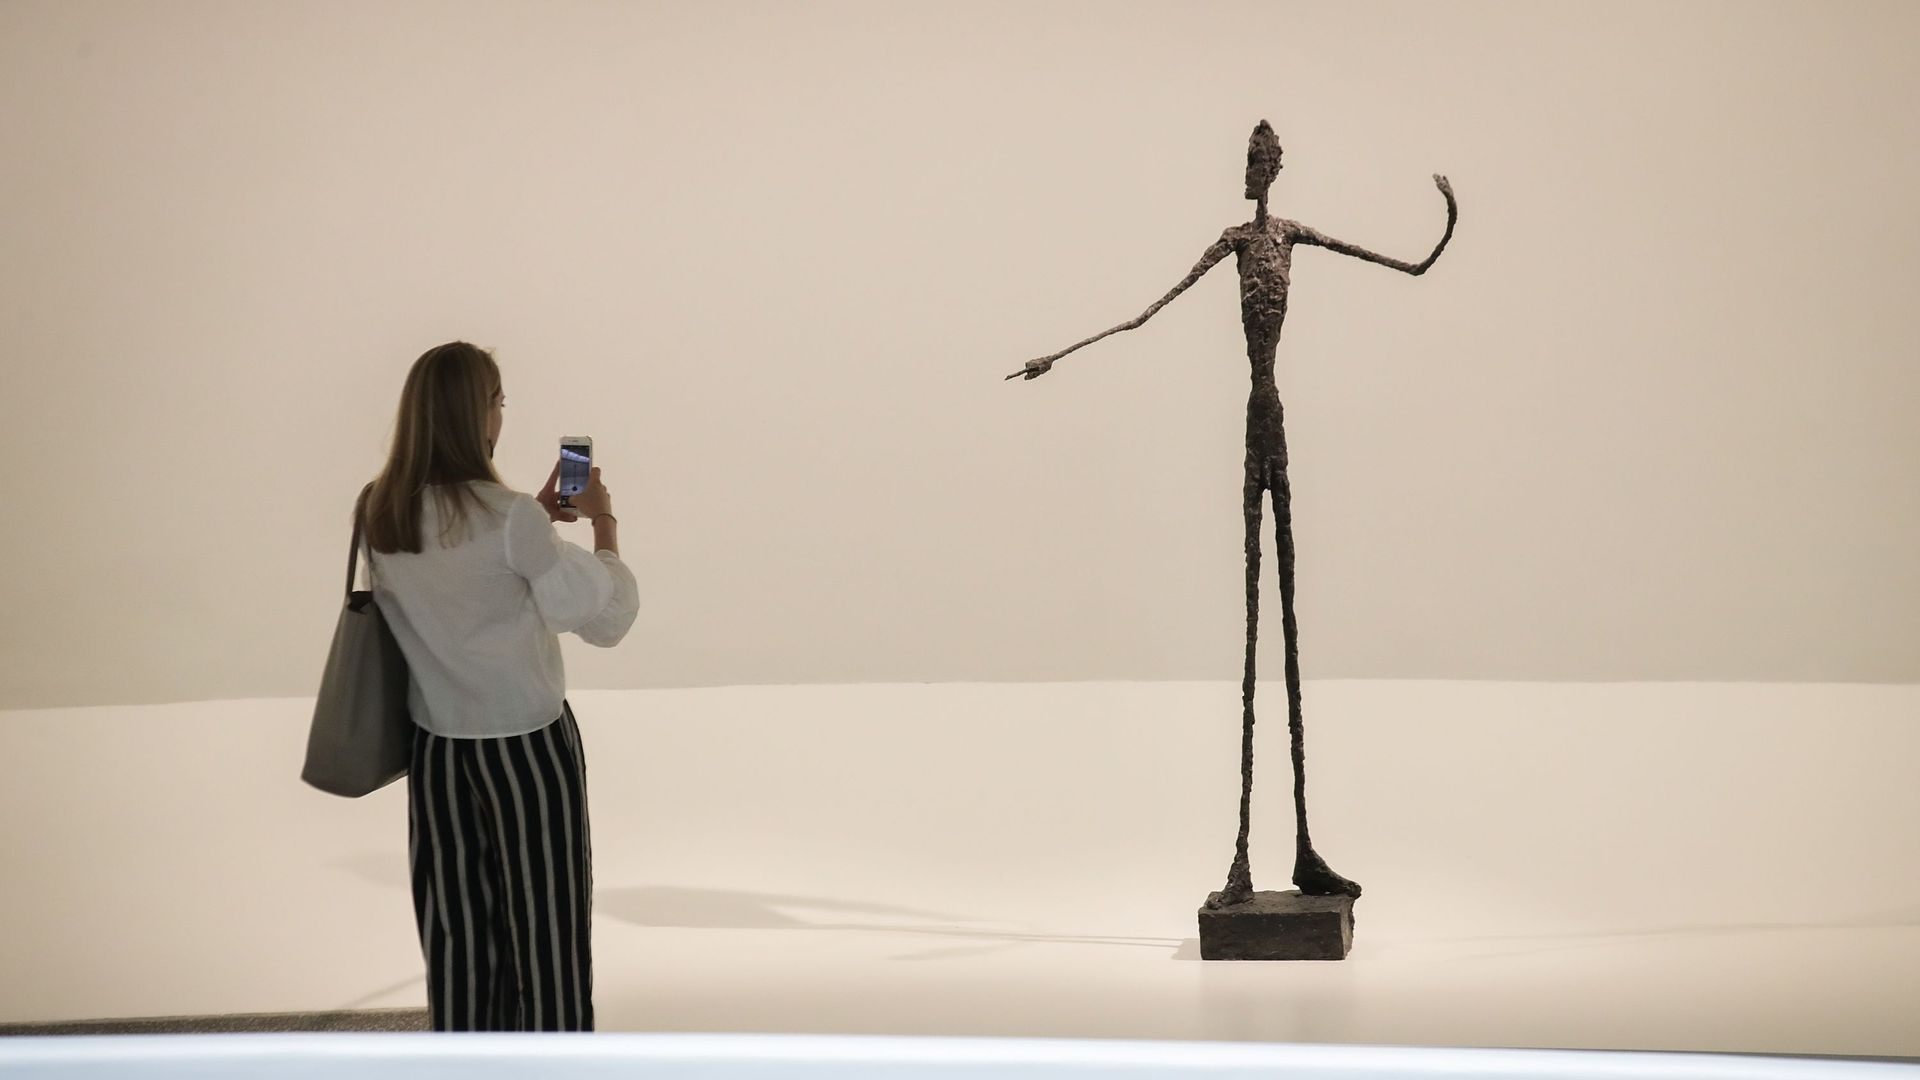 Photographie de "L’homme au doigt", une sculpture en bronze datant de 1947 de l’artiste suisse Alberto Giacometti au Musée Guggenheim, le 7 juin 2018 à New York.